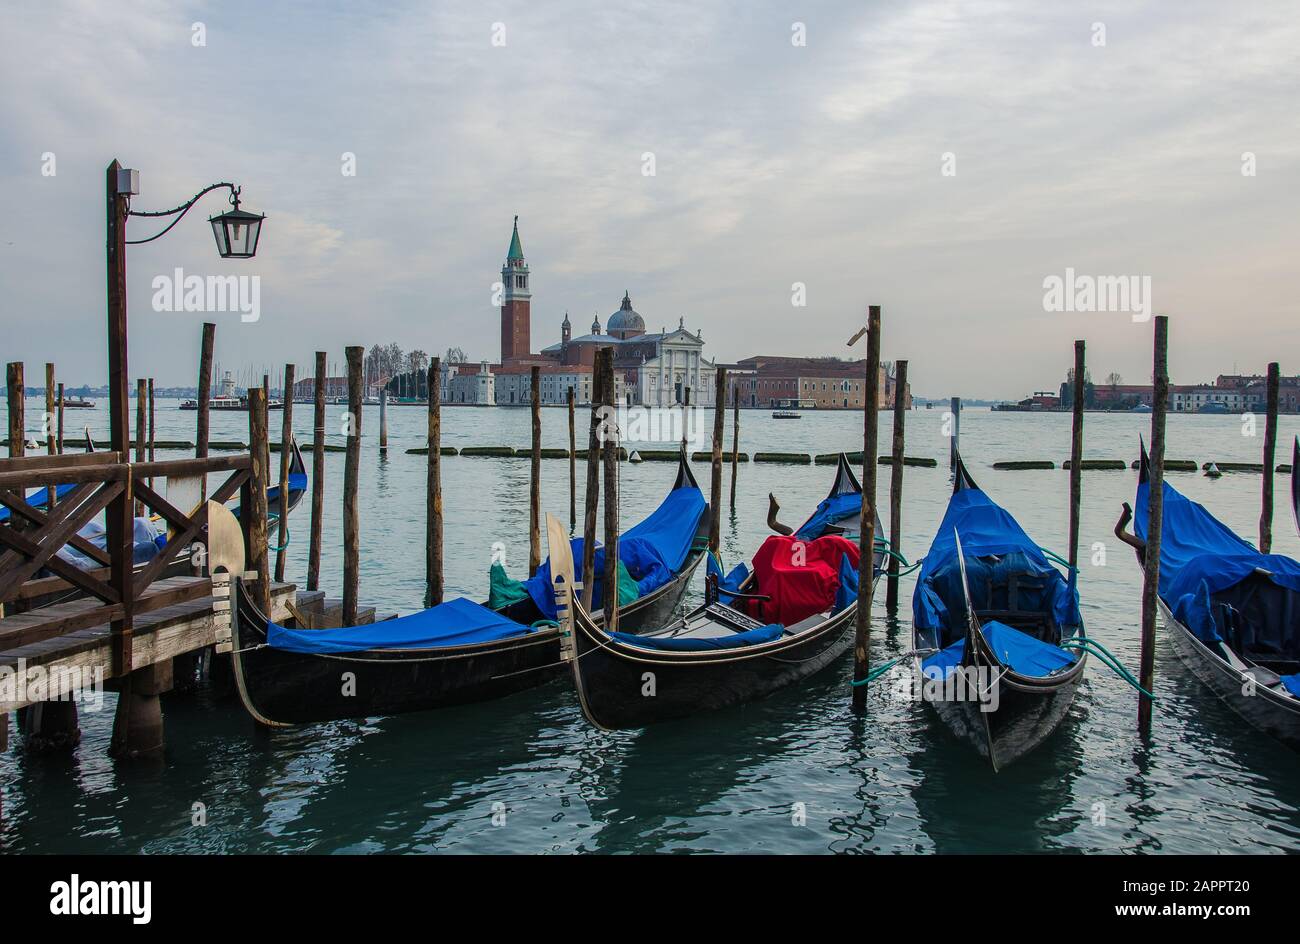 Impresionantes vistas de la hermosa ciudad de Venecia, Italia. Muchas góndolas navegando por uno de los canales. Foto de stock